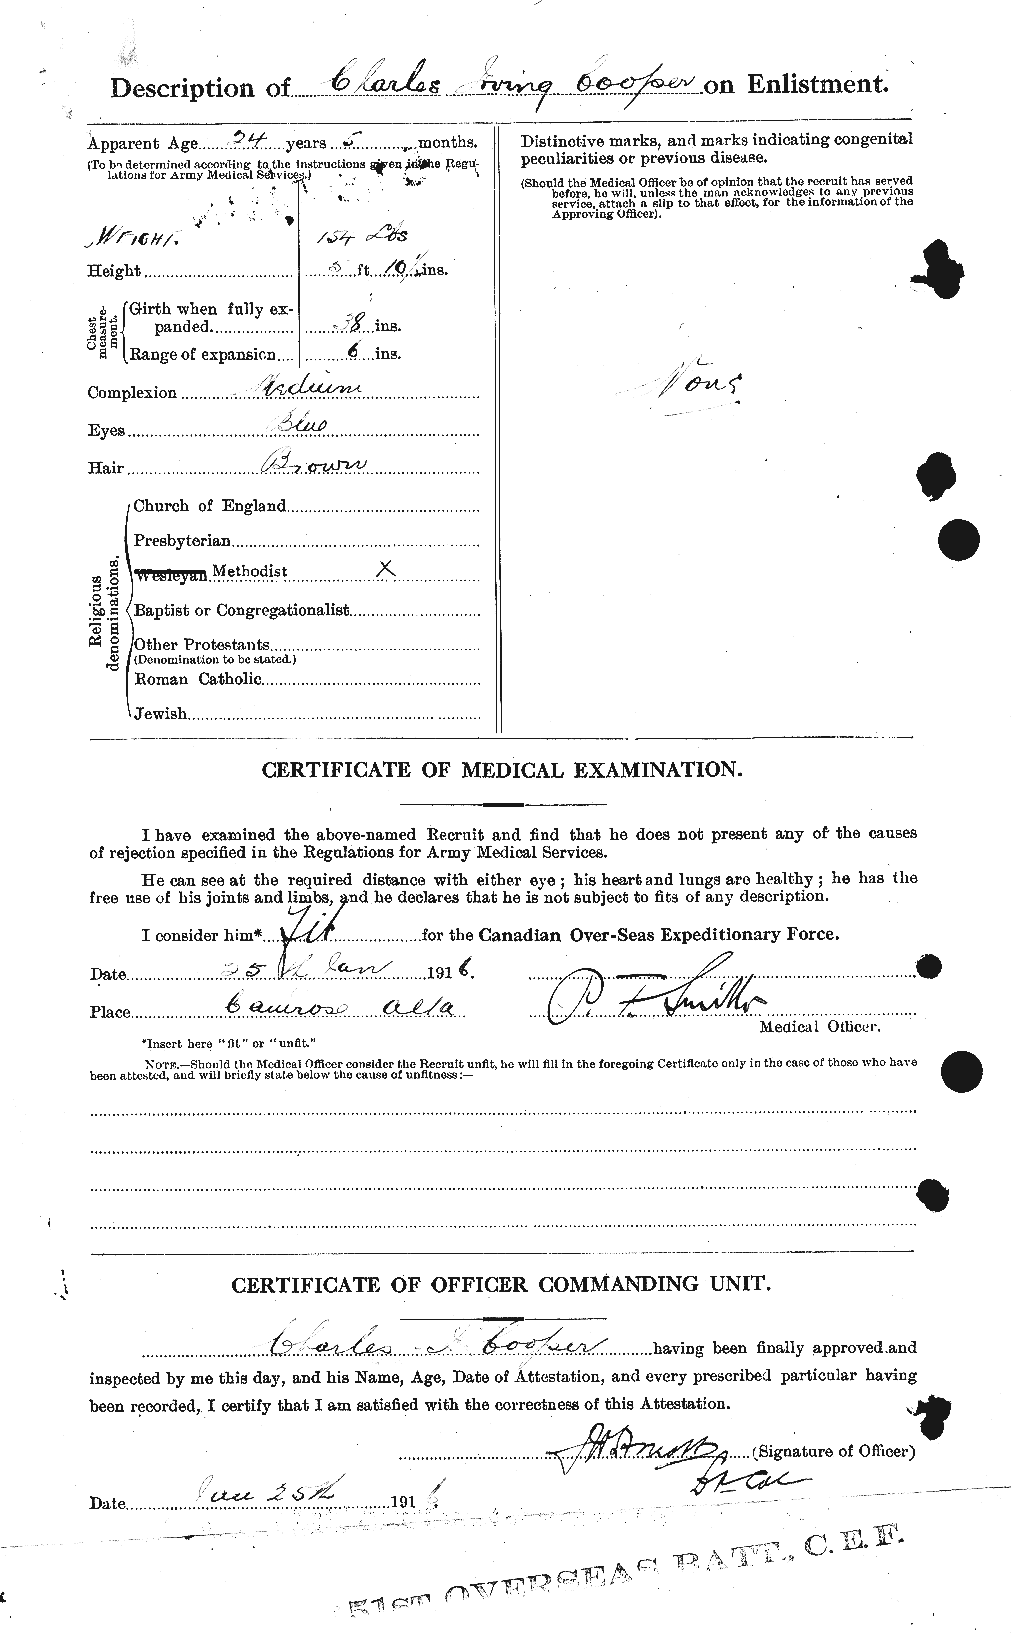 Dossiers du Personnel de la Première Guerre mondiale - CEC 054244b